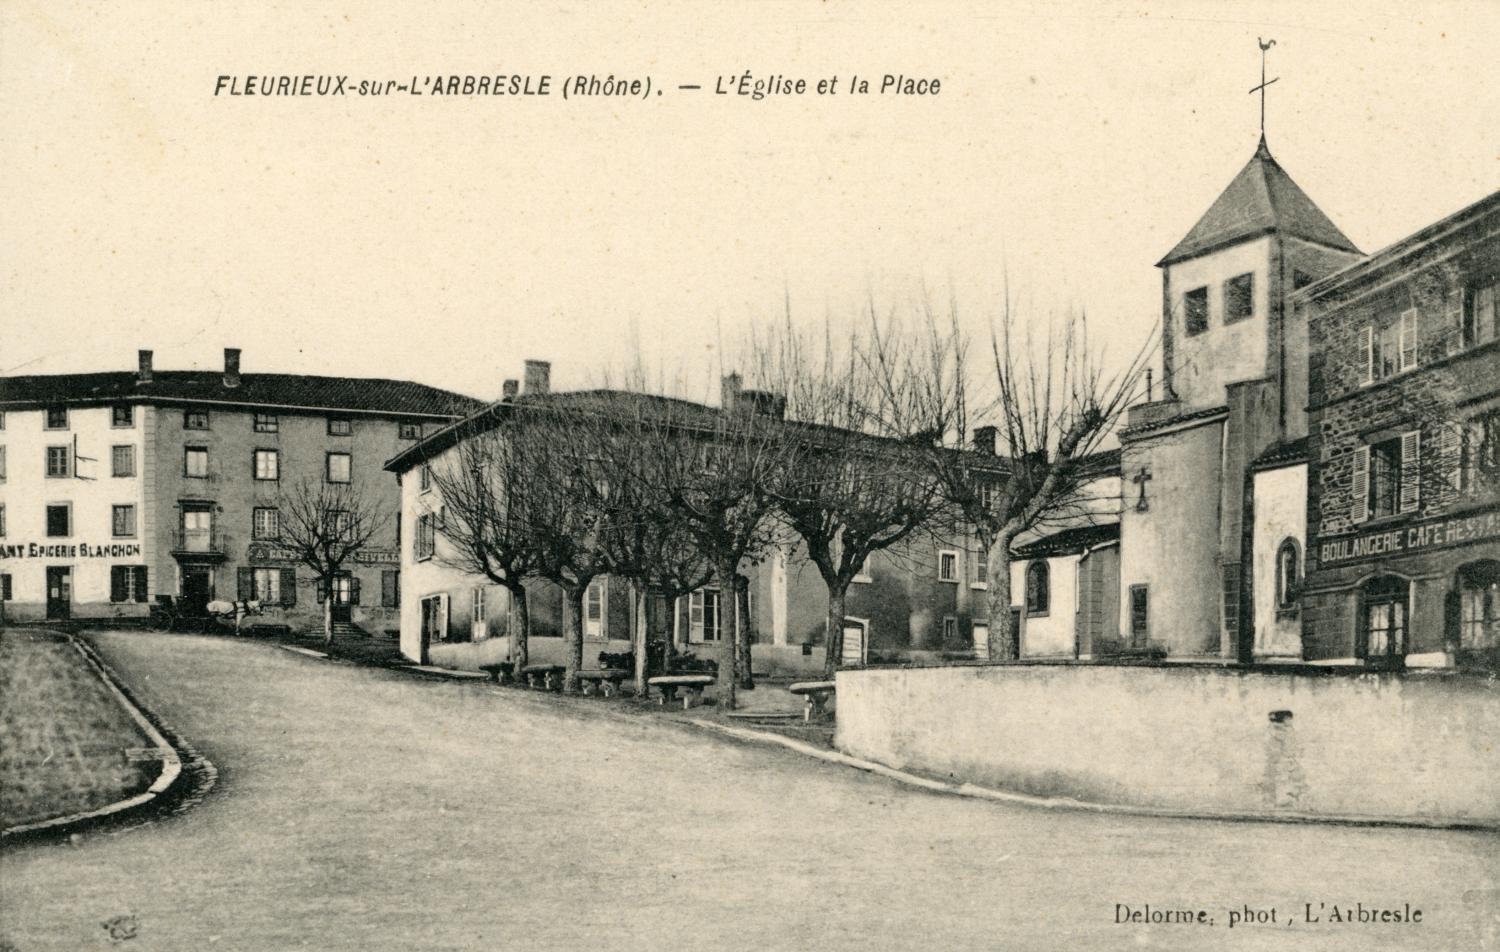 Fleurieux-sur-L'Arbresle (Rhône). - L'église et la place